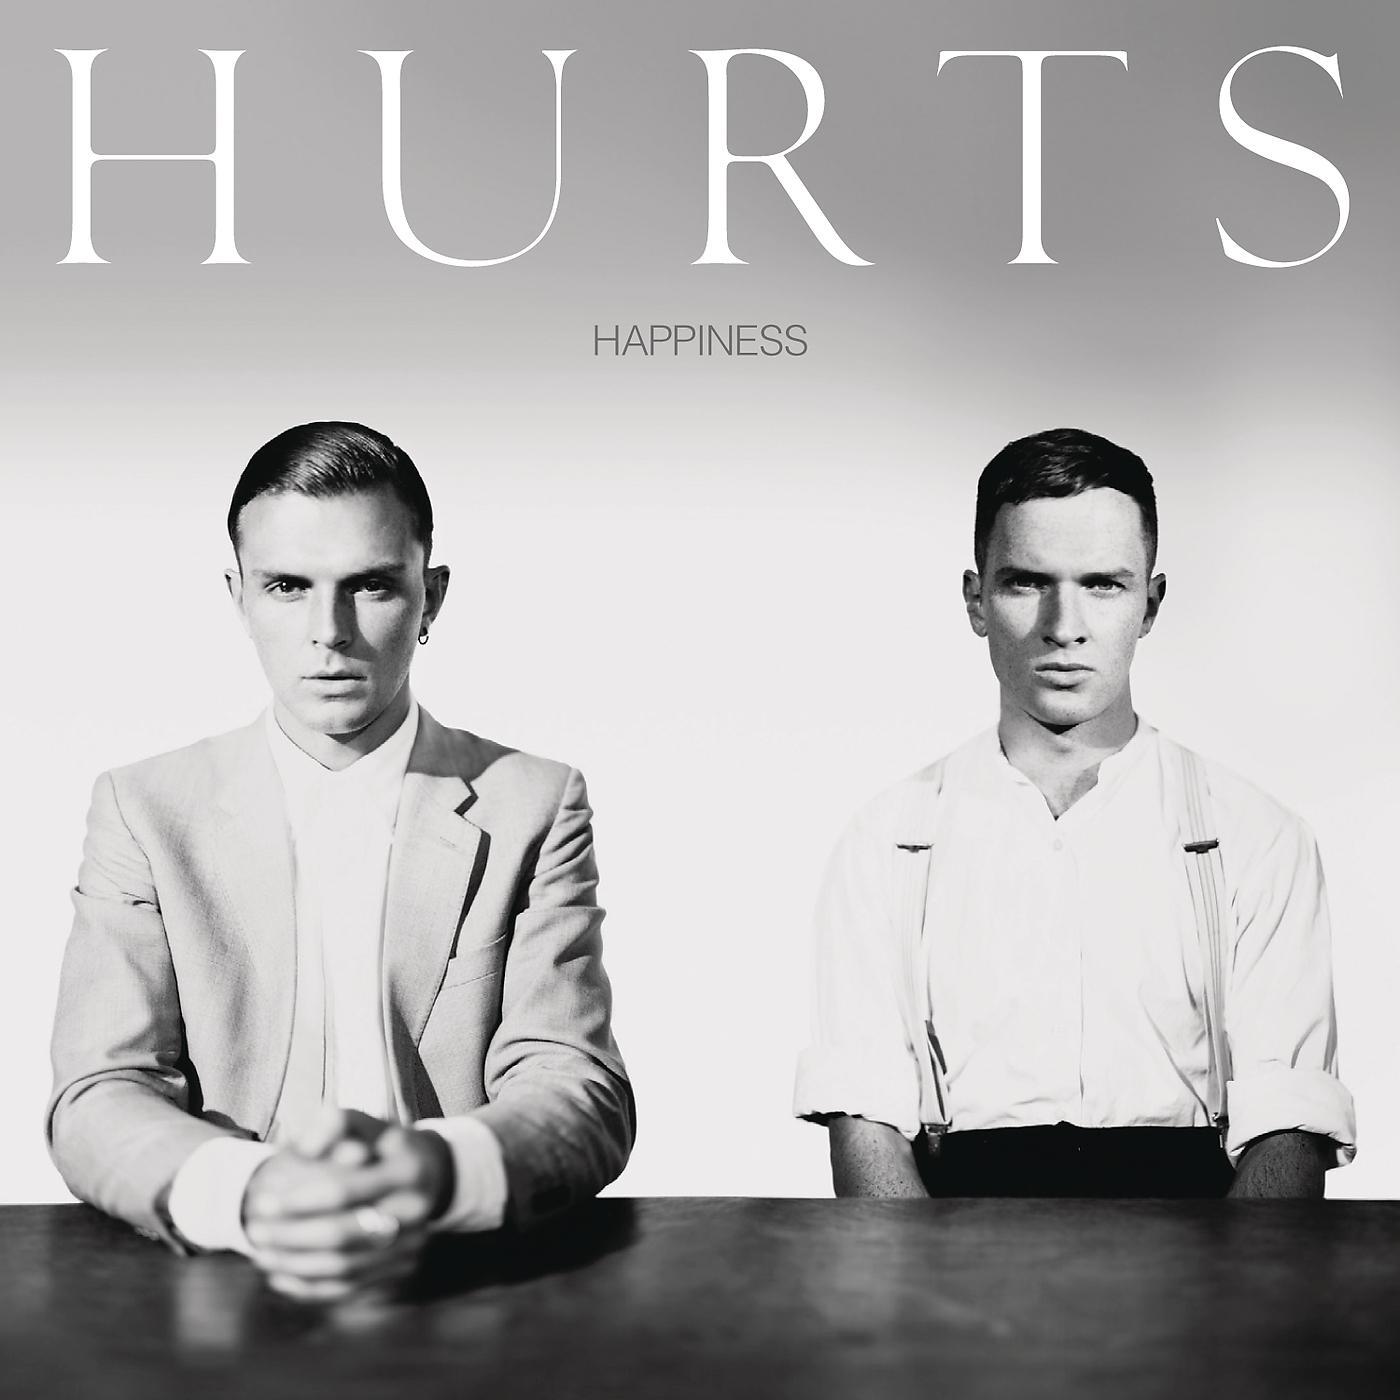 Песни группы life. Группа hurts альбомы. Hurts 2010 Happiness. Hurts обложки. Hurts обложки альбомов.